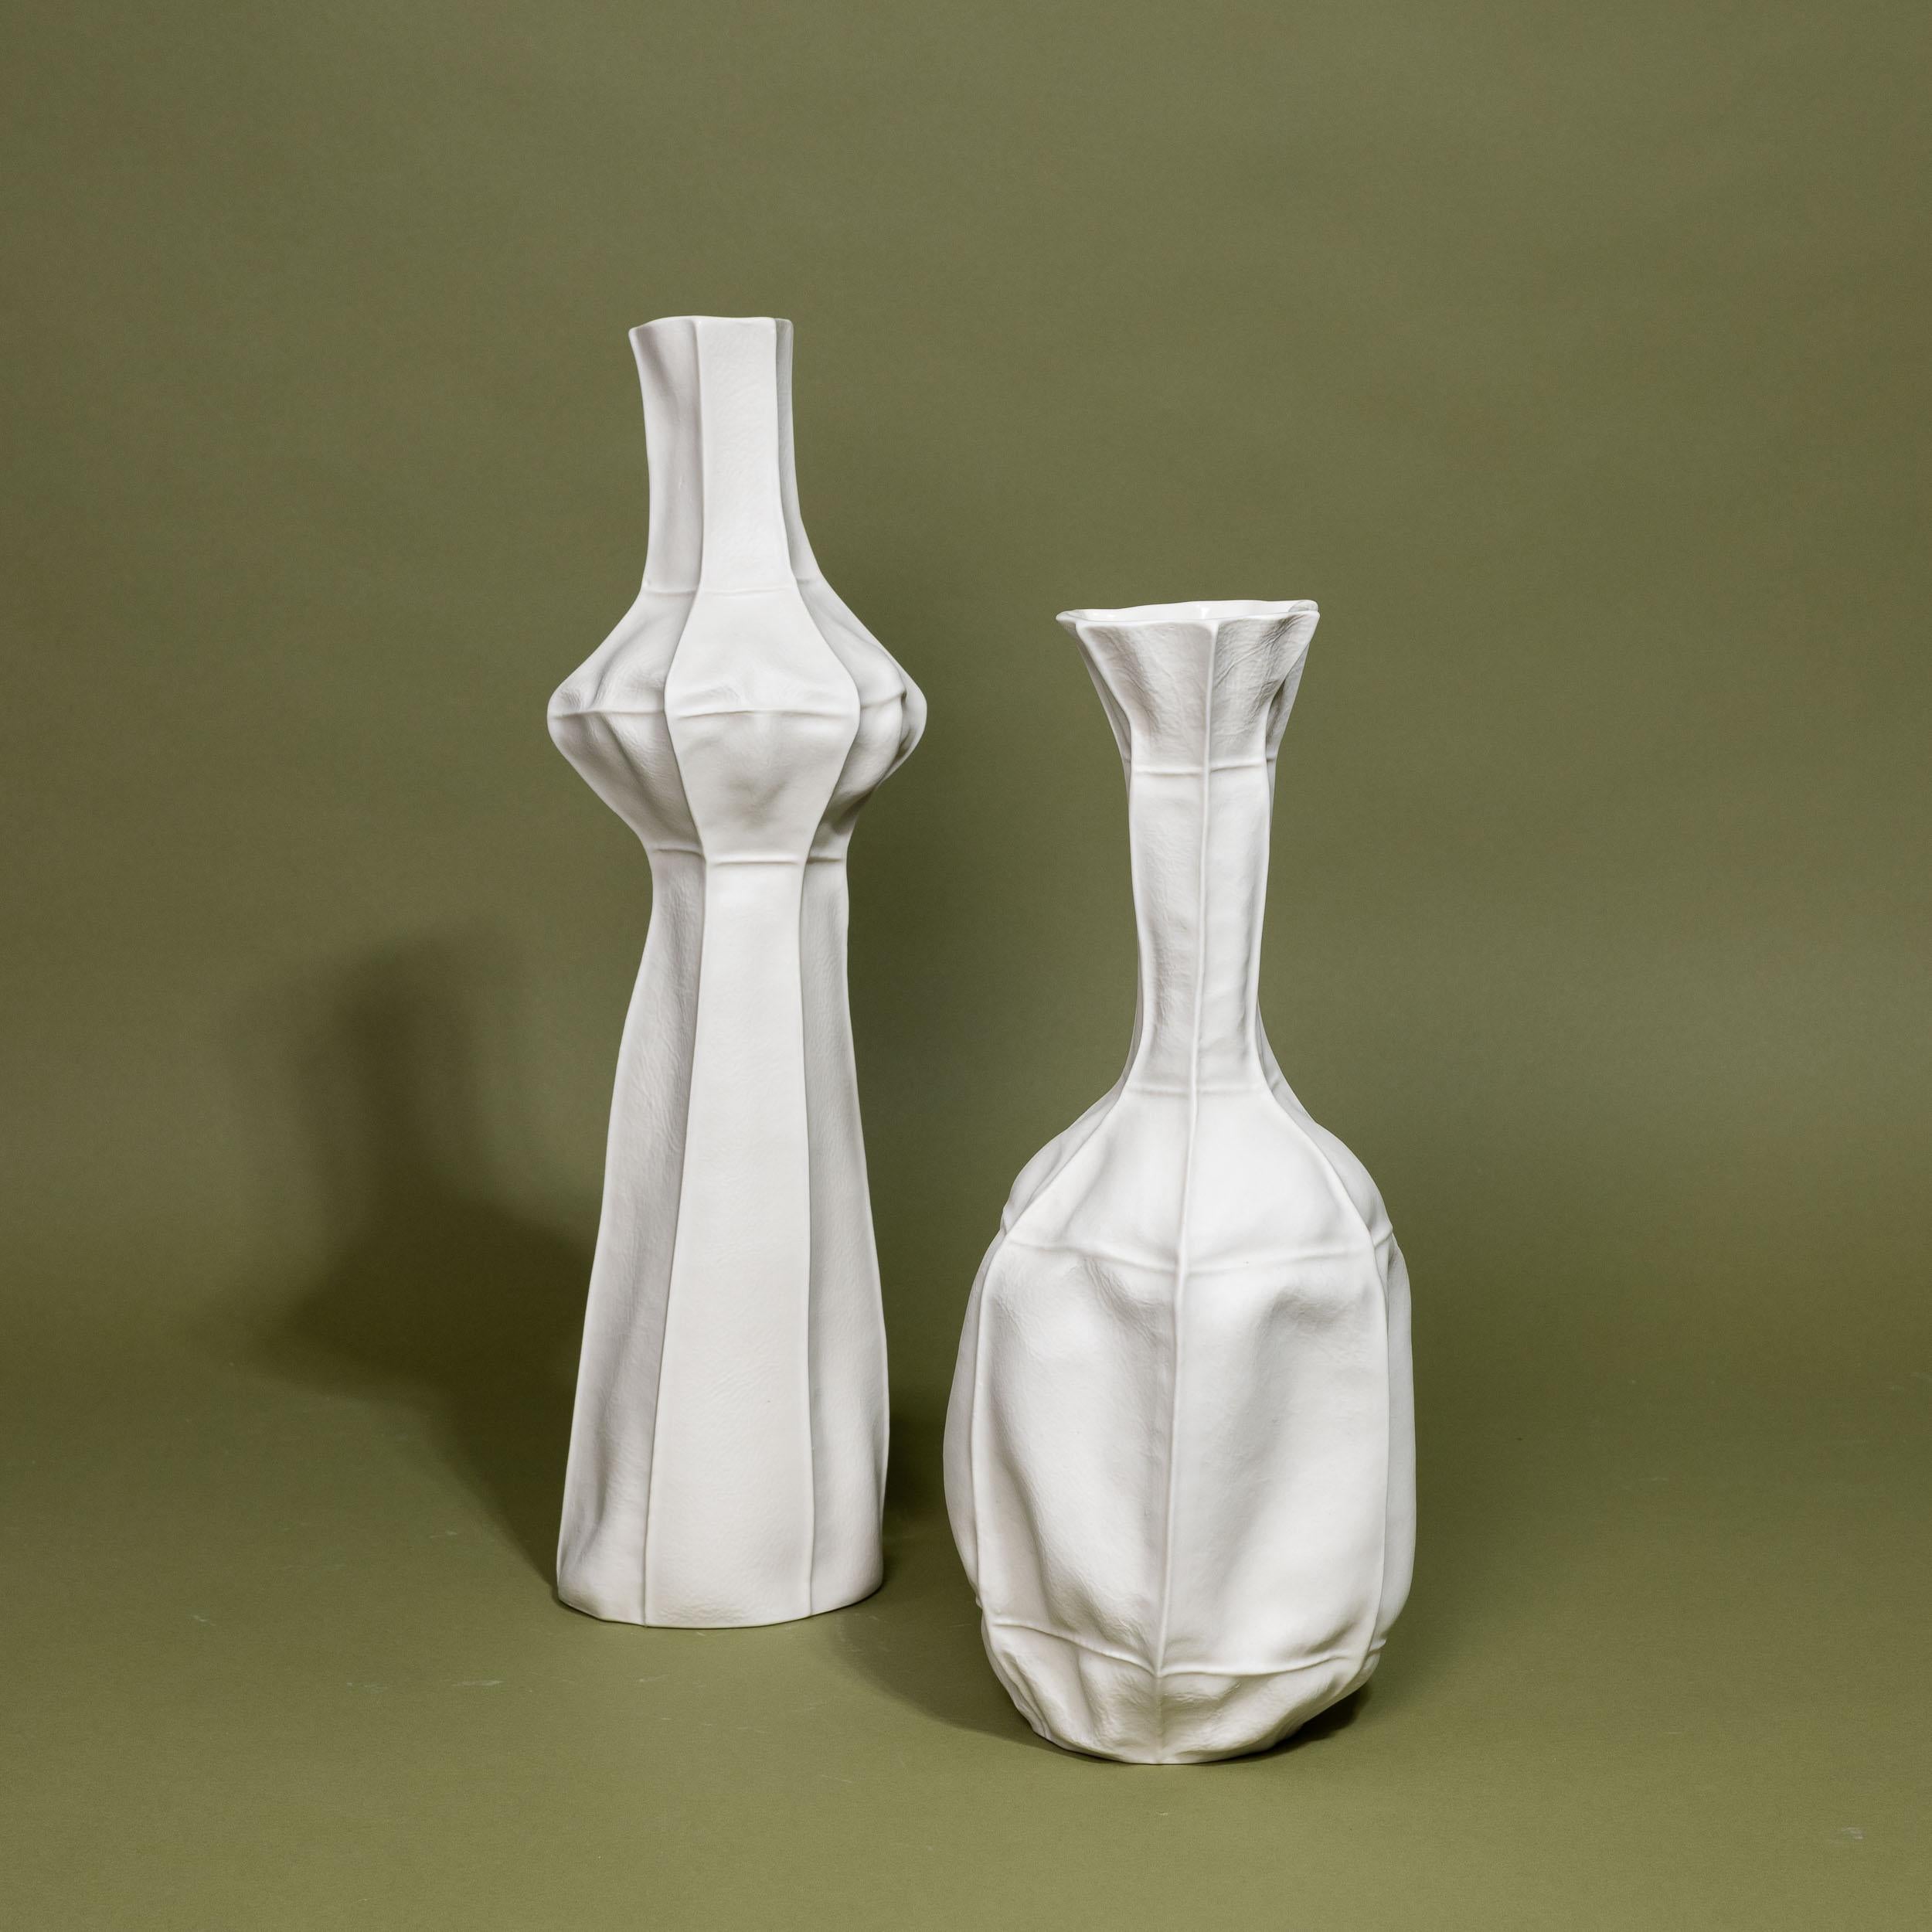 Ein Paar weißer Porzellanvasen, die durch Gießen in Lederformen hergestellt wurden. 

Aufgrund des Herstellungsprozesses ist jedes Stück ein Unikat. Das Set enthält eine hohe und eine mittlere Vase. 

Die Vasen sind wasserdicht.

Große Vase: 5,5